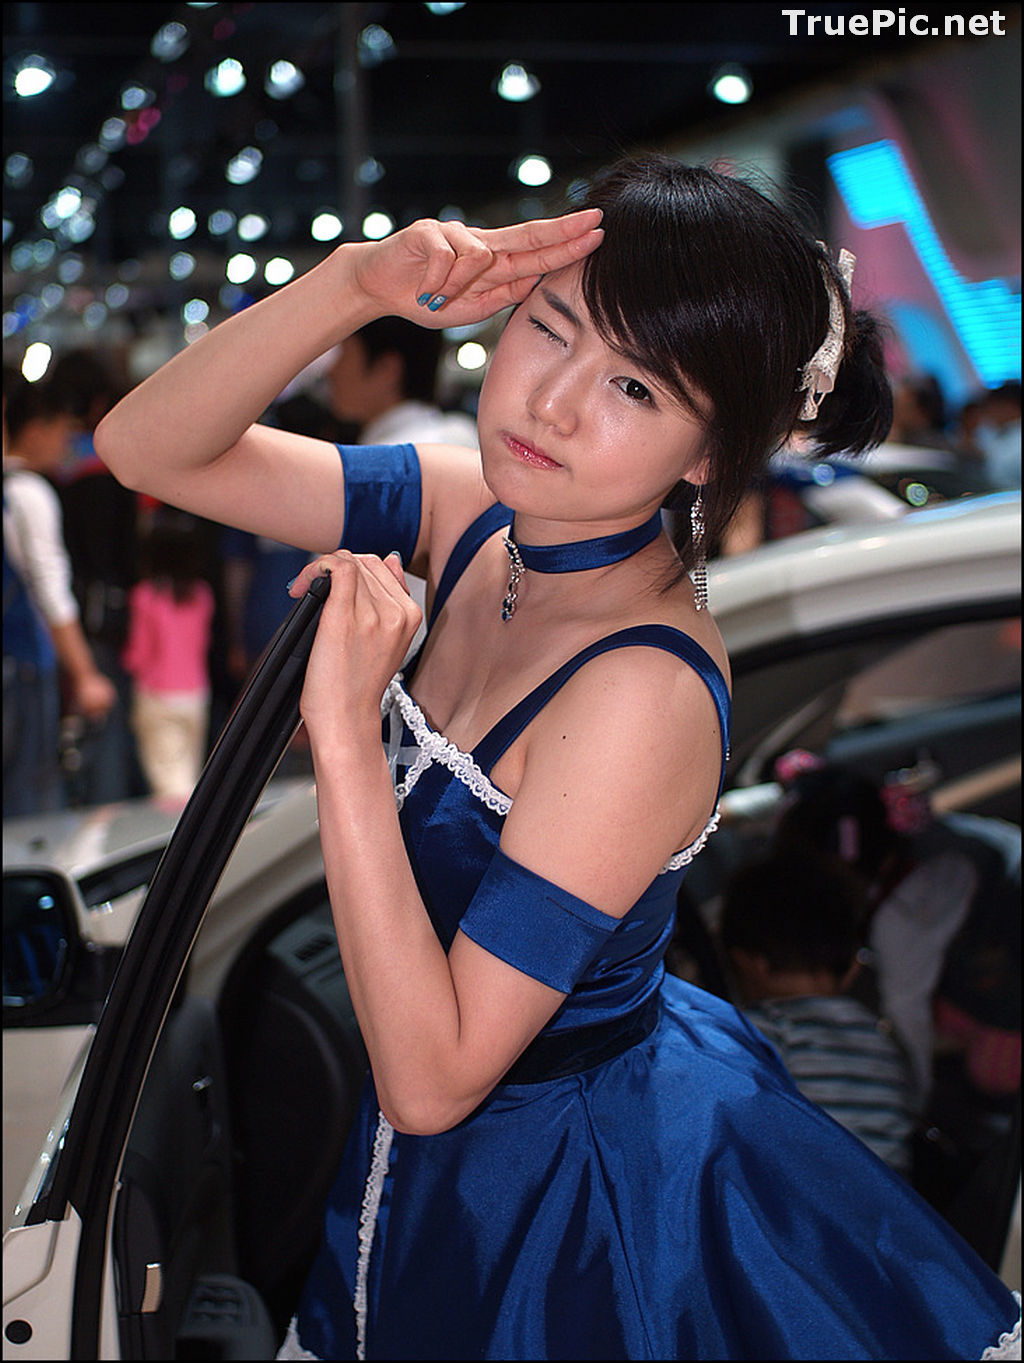 Image Best Beautiful Images Of Korean Racing Queen Han Ga Eun #3 - TruePic.net - Picture-47